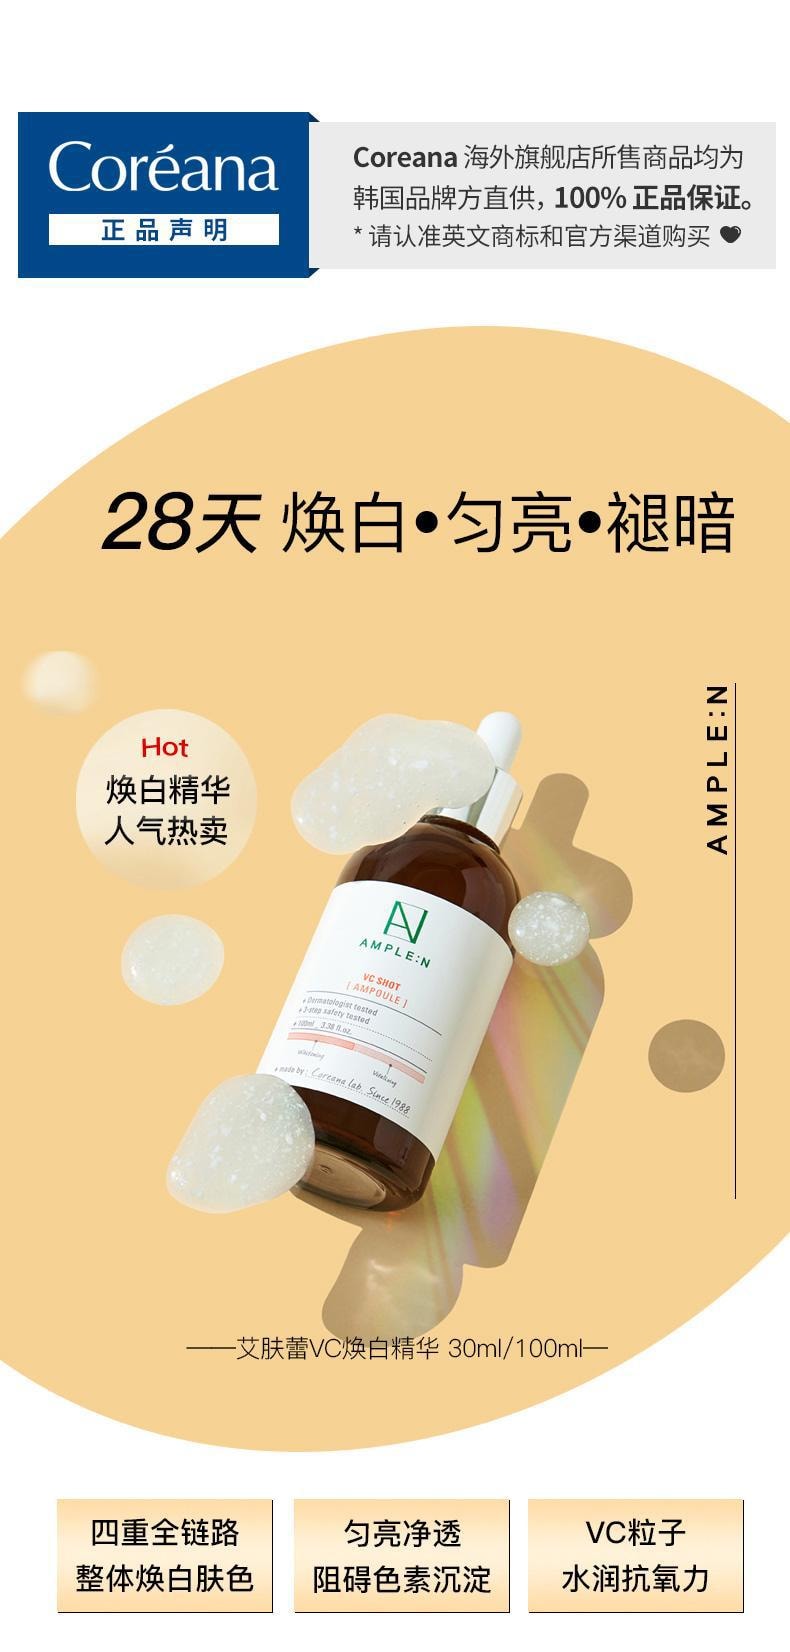 韓國 AMPLE:N 勝肽彈力精華 + VC抗氧化 安瓶精華套裝